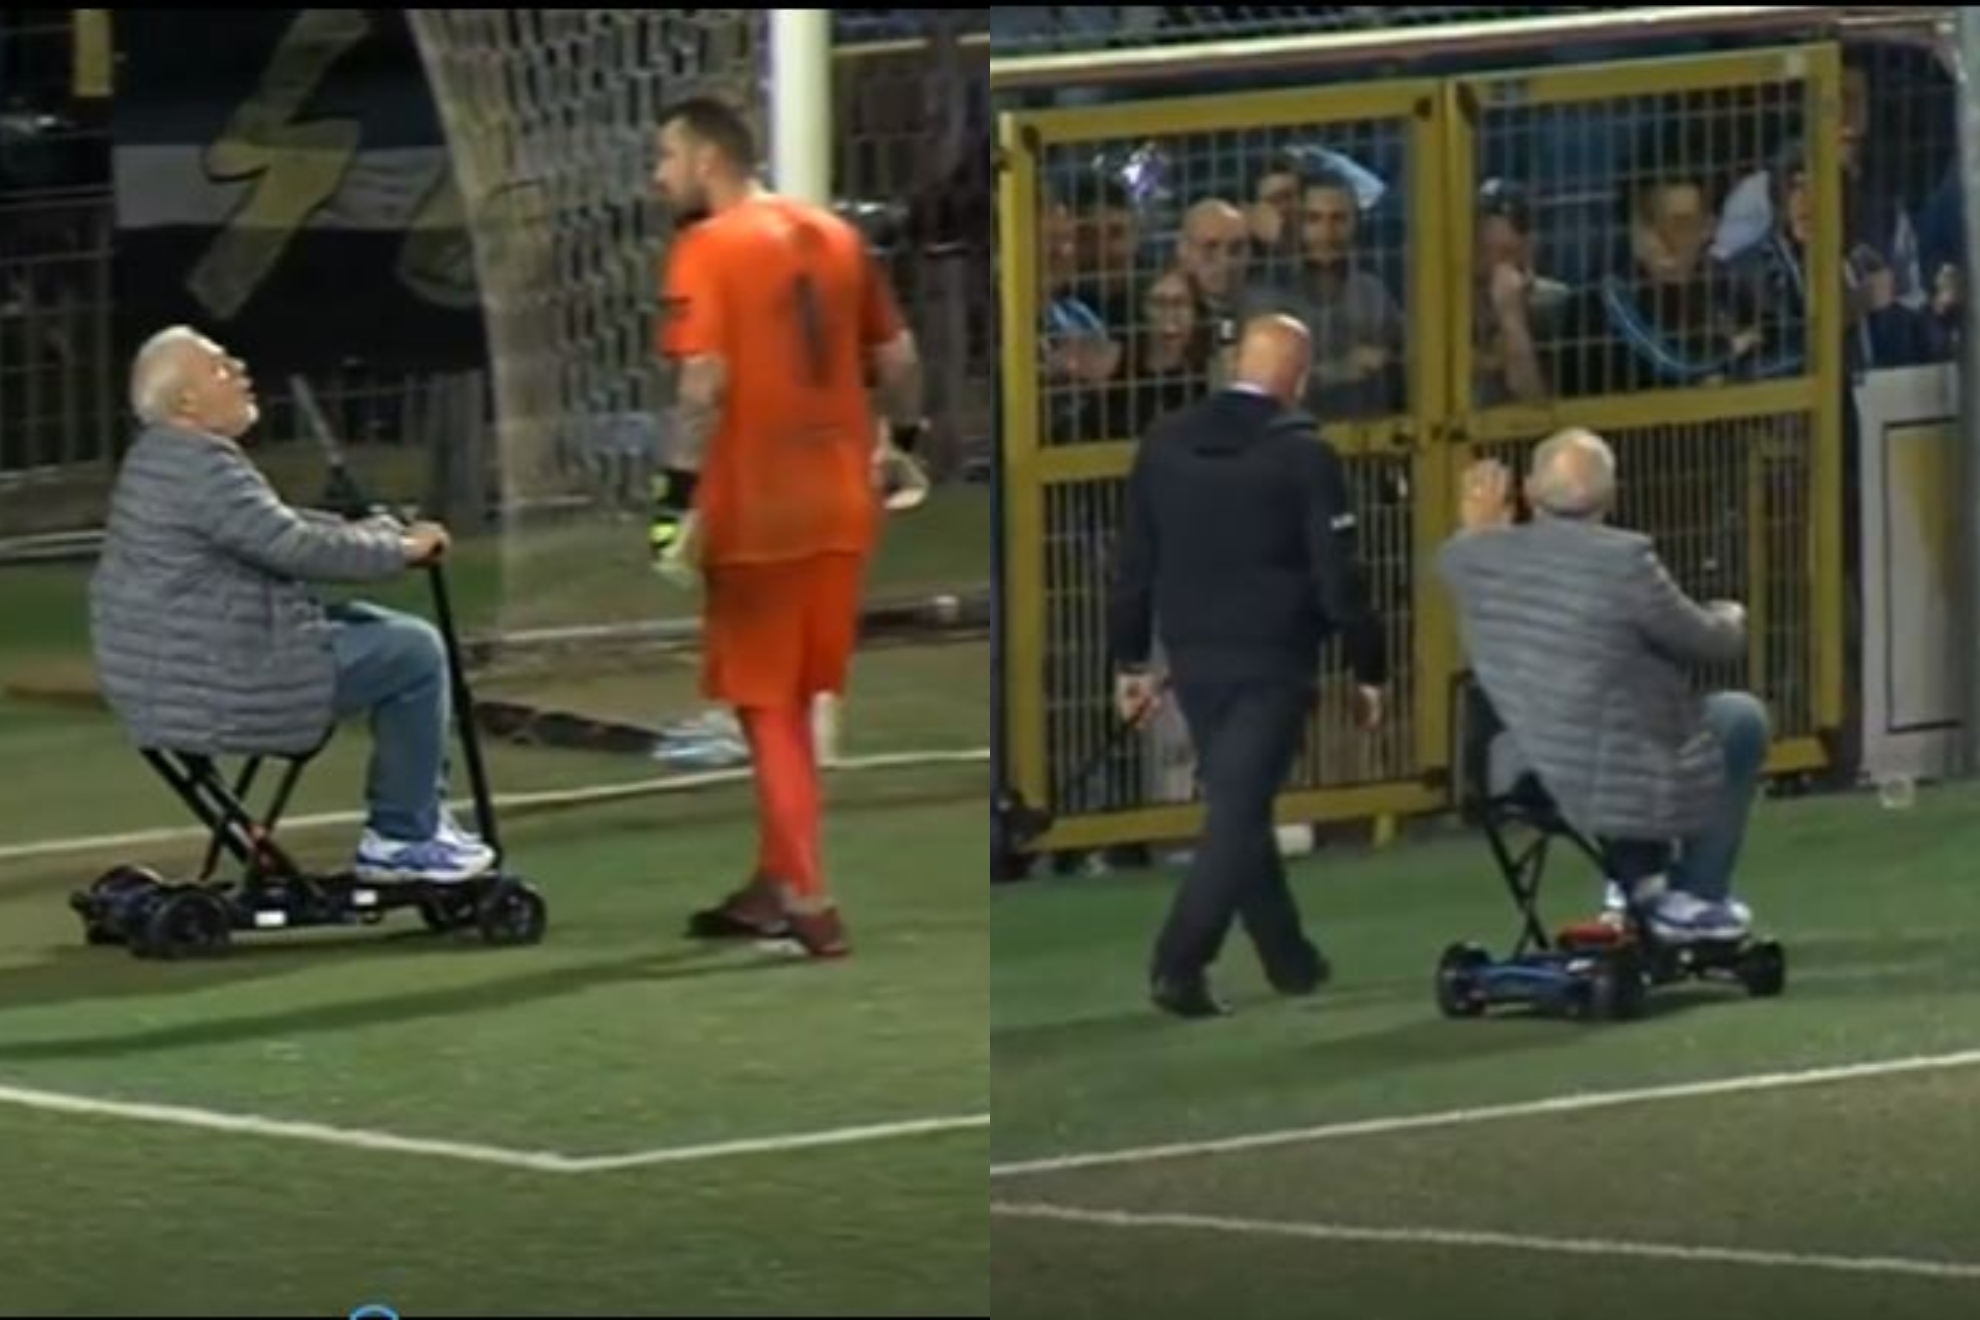 La protesta nunca vista: Un presidente baja a al campo y se va expulsado en silla de ruedas motorizada